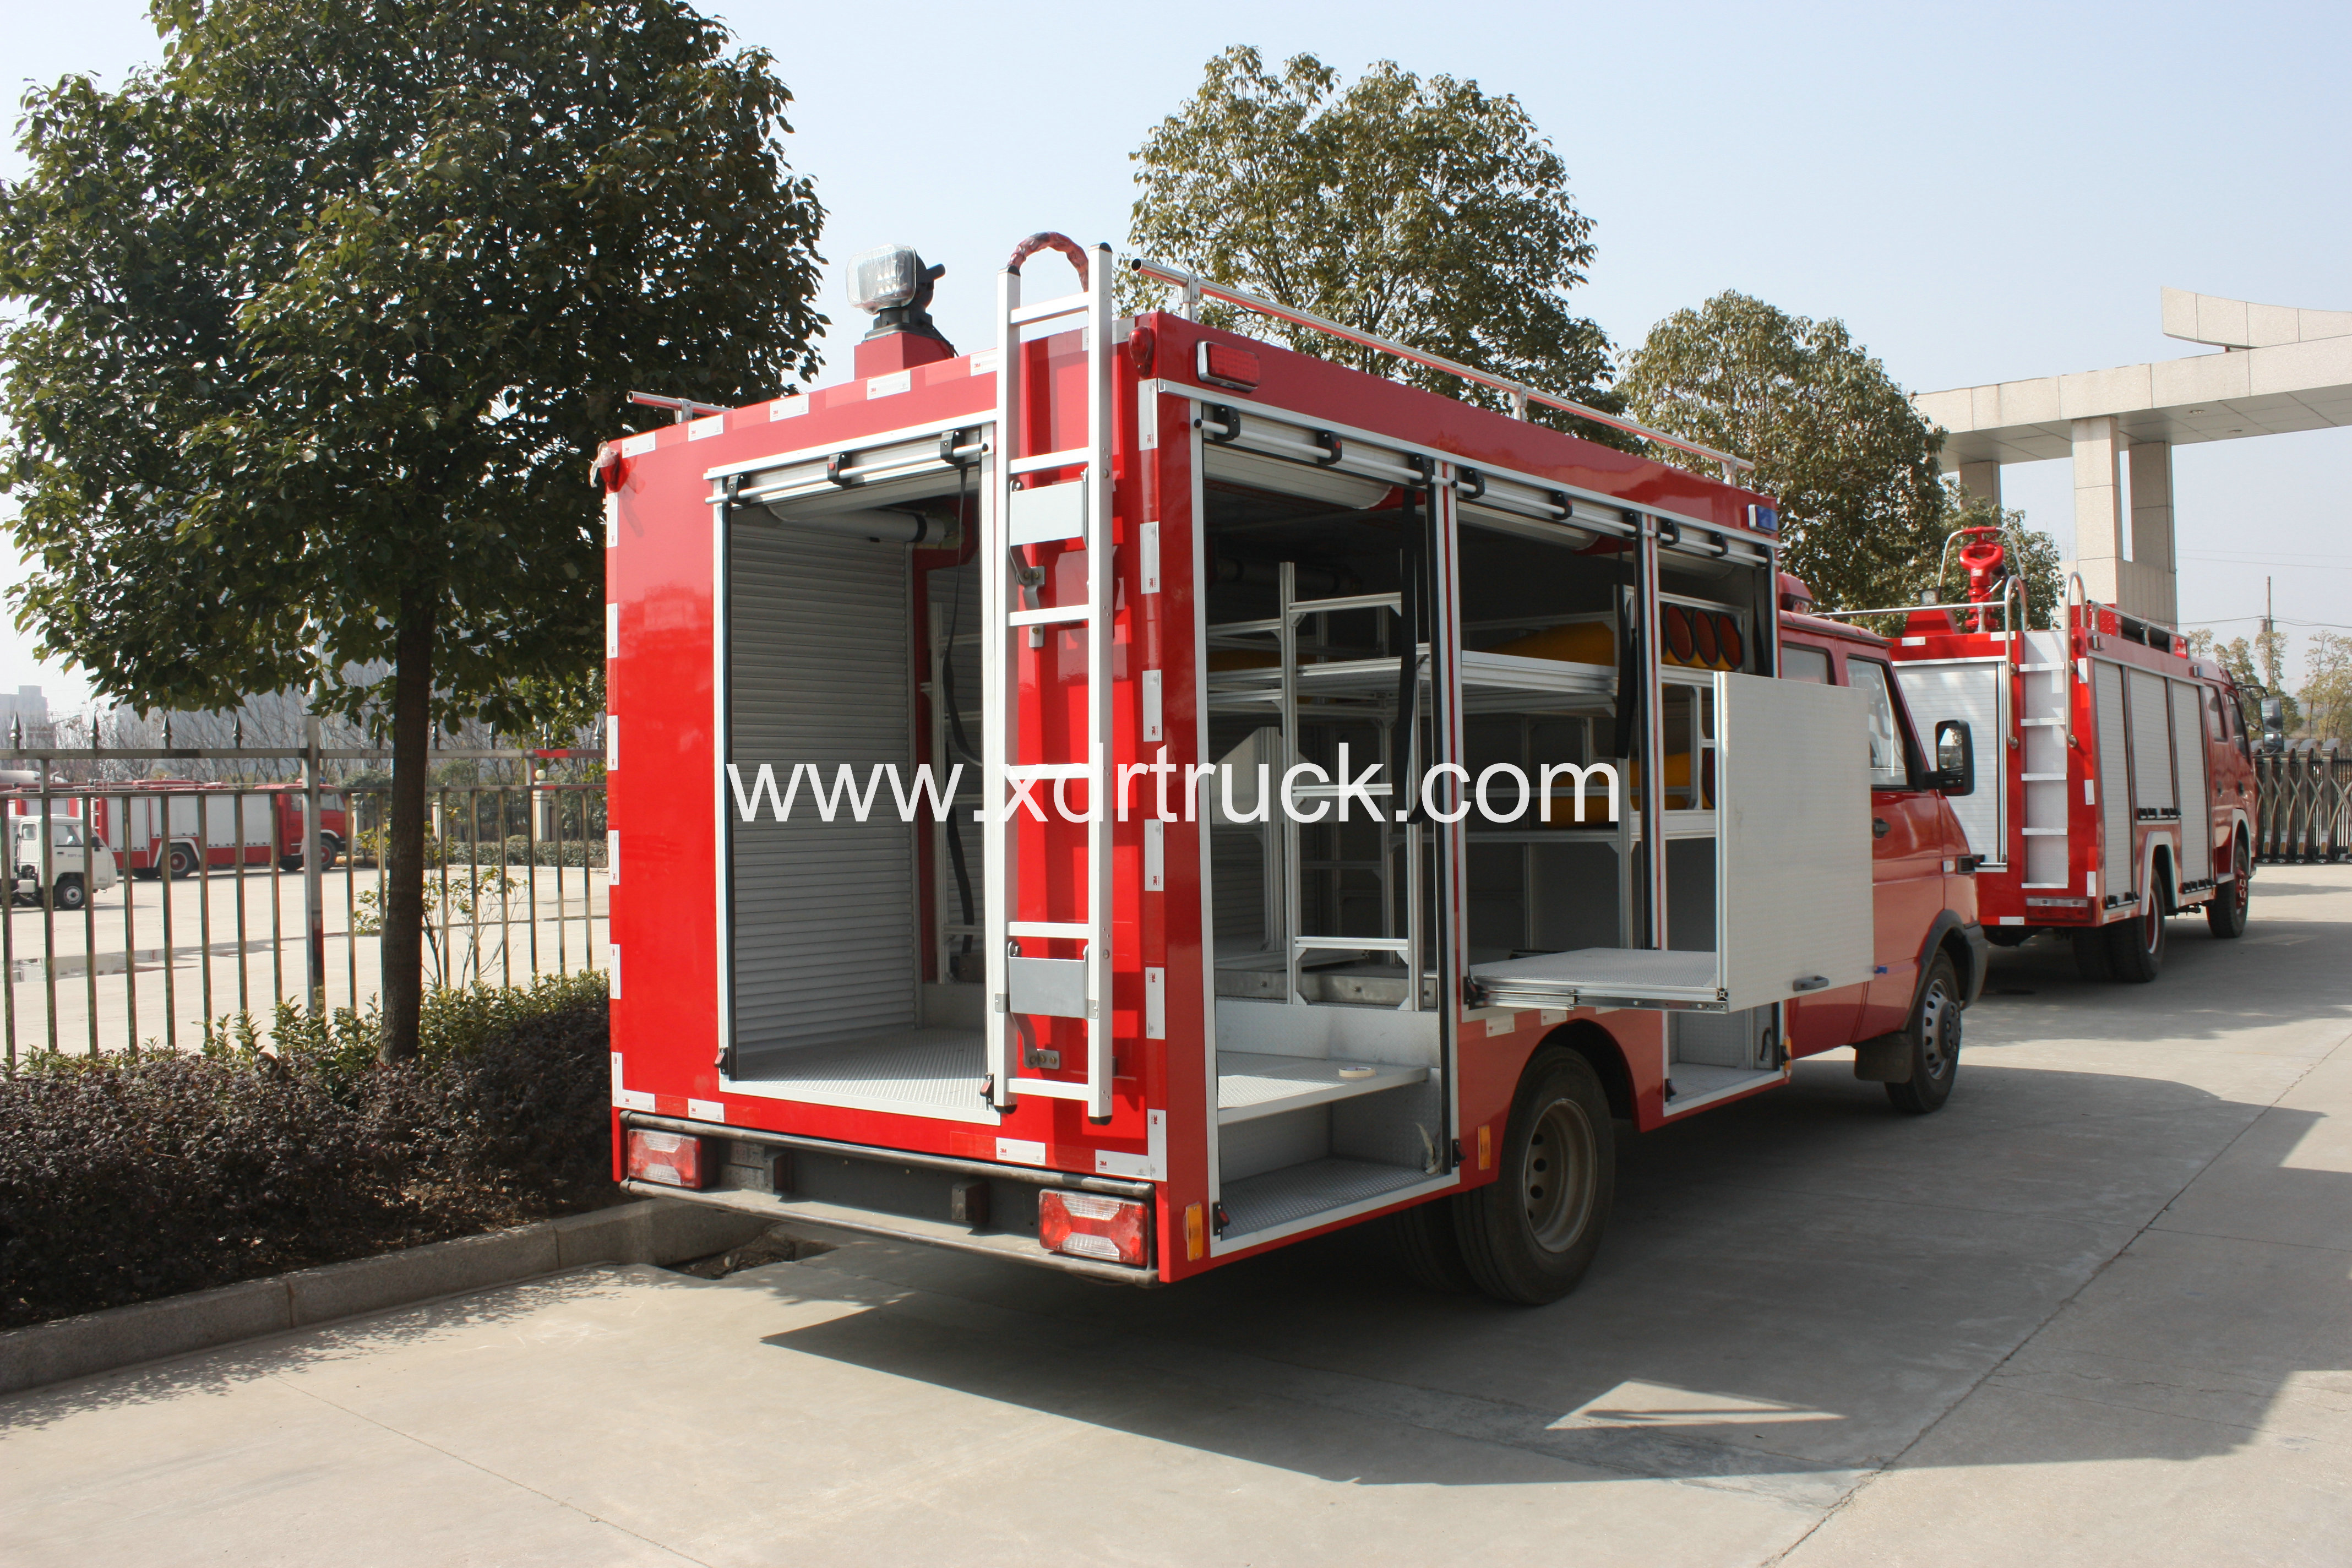 Iveco fire rescue truck (1)